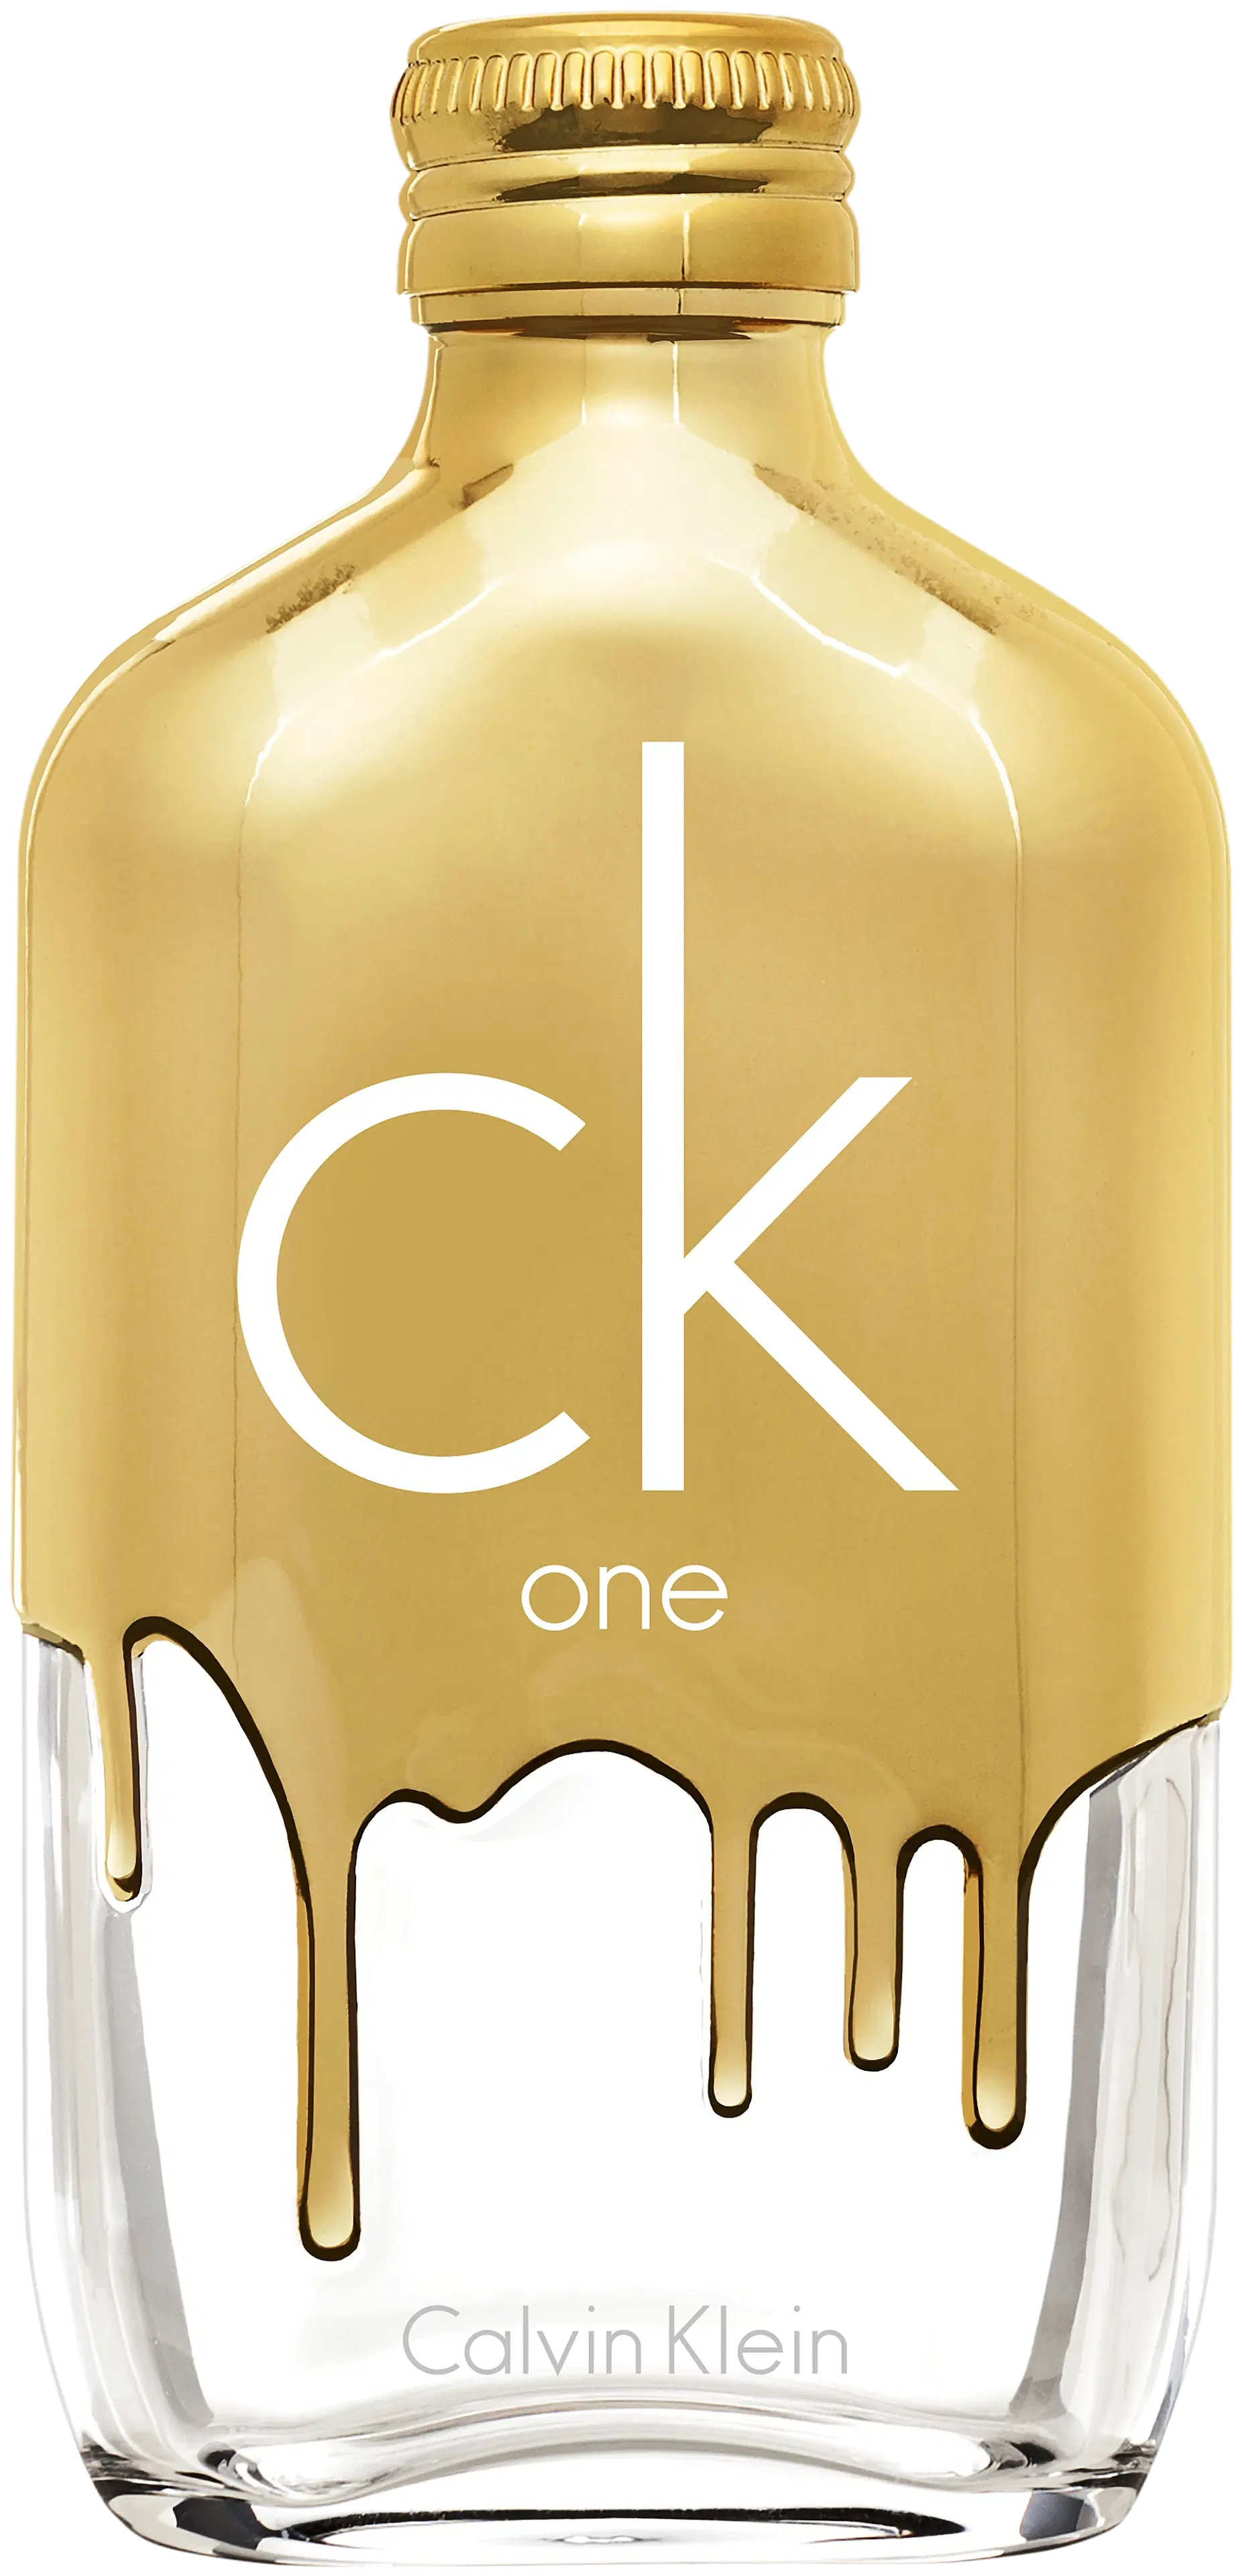 Calvin Klein ck one gold EdT tuoksu 50 ml